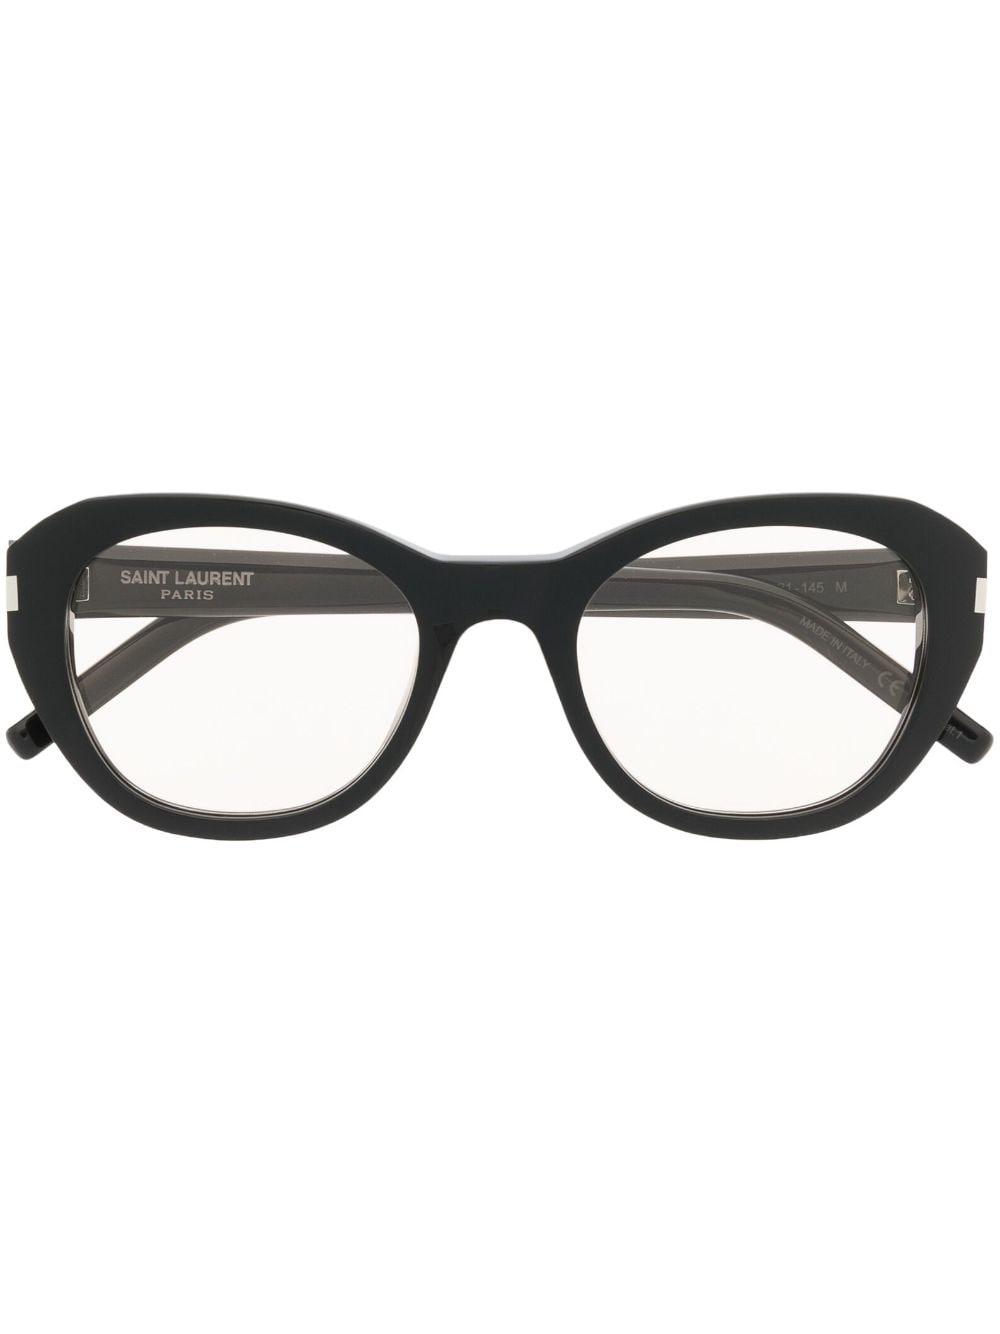 Saint Laurent Eyewear Sonnenbrille mit rundem Gestell - Schwarz von Saint Laurent Eyewear